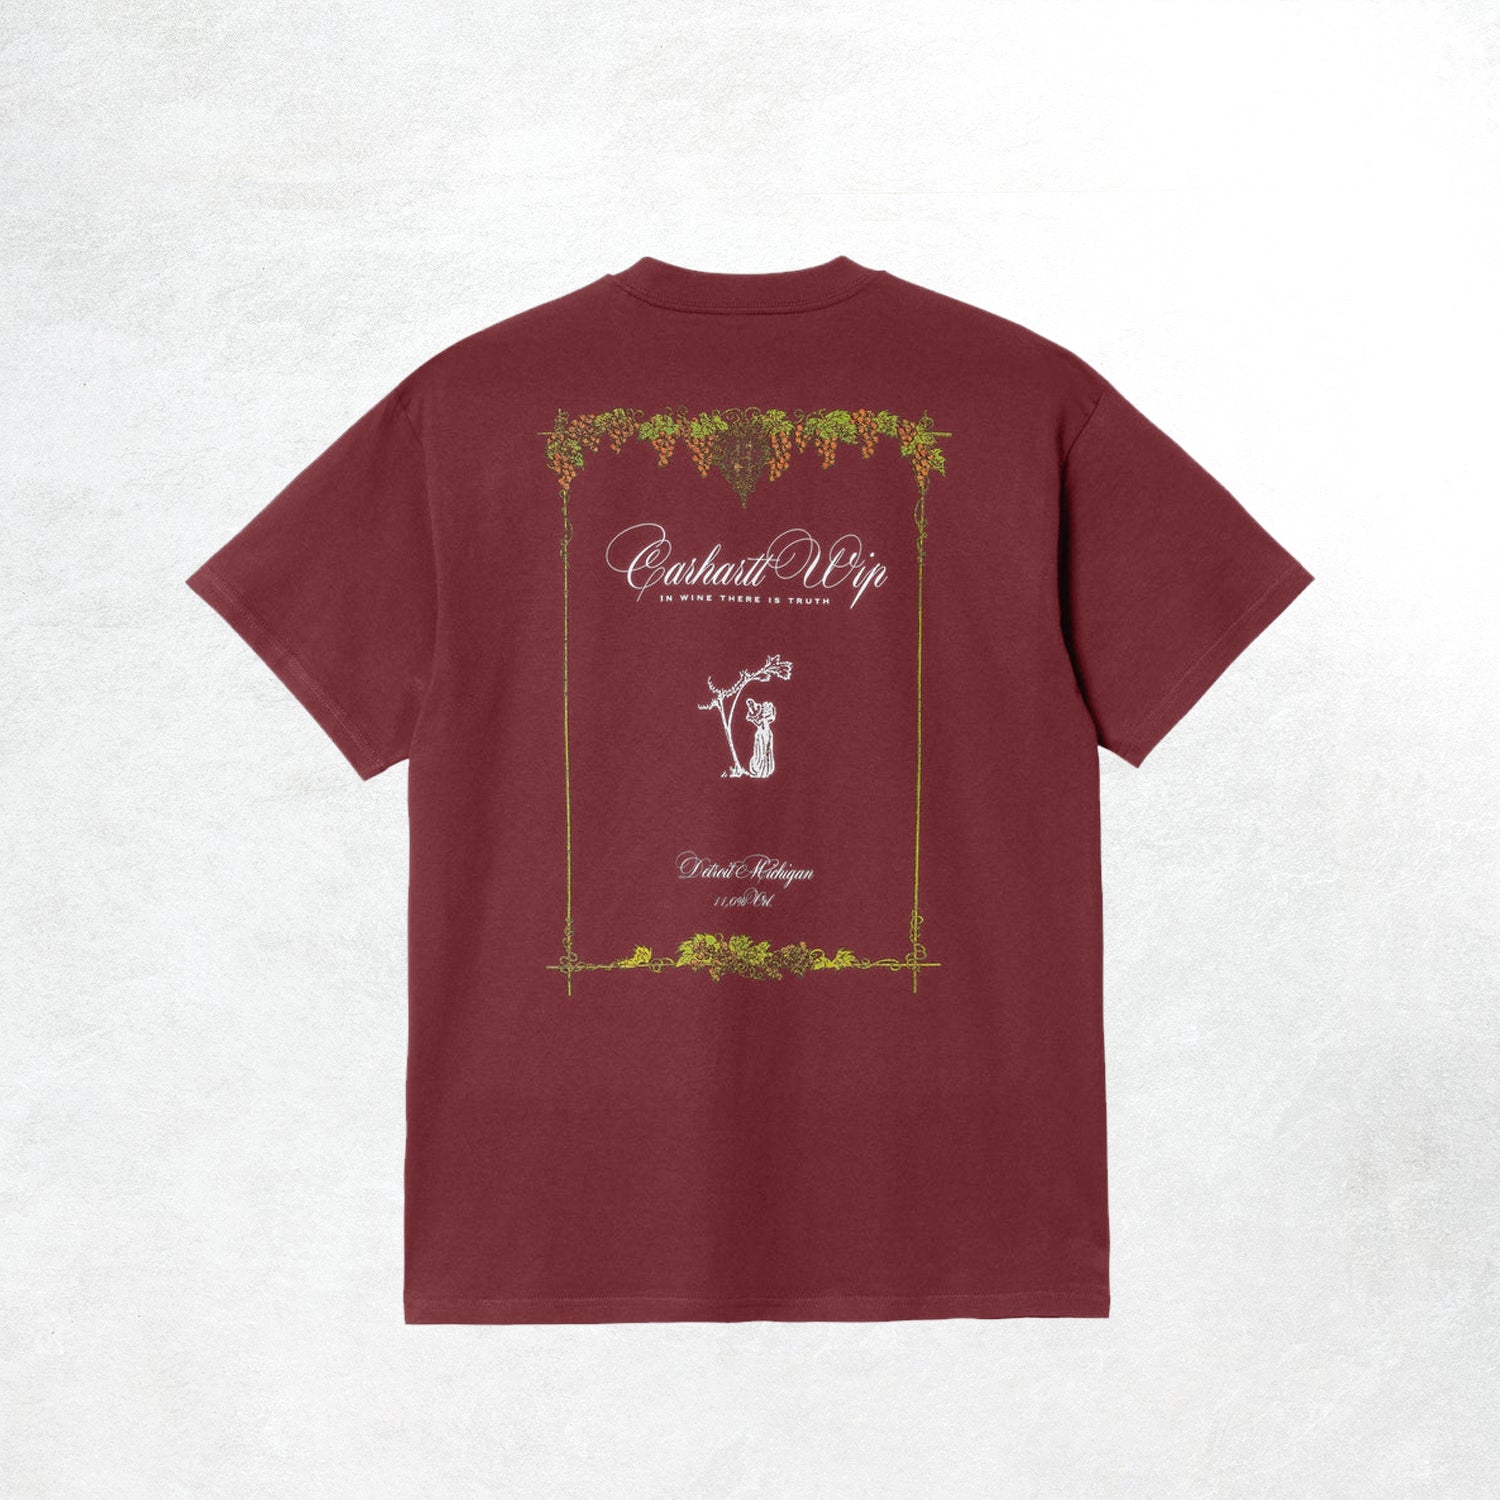 Carhartt WIP S/S Vino T-Shirt: Corvina (Back)